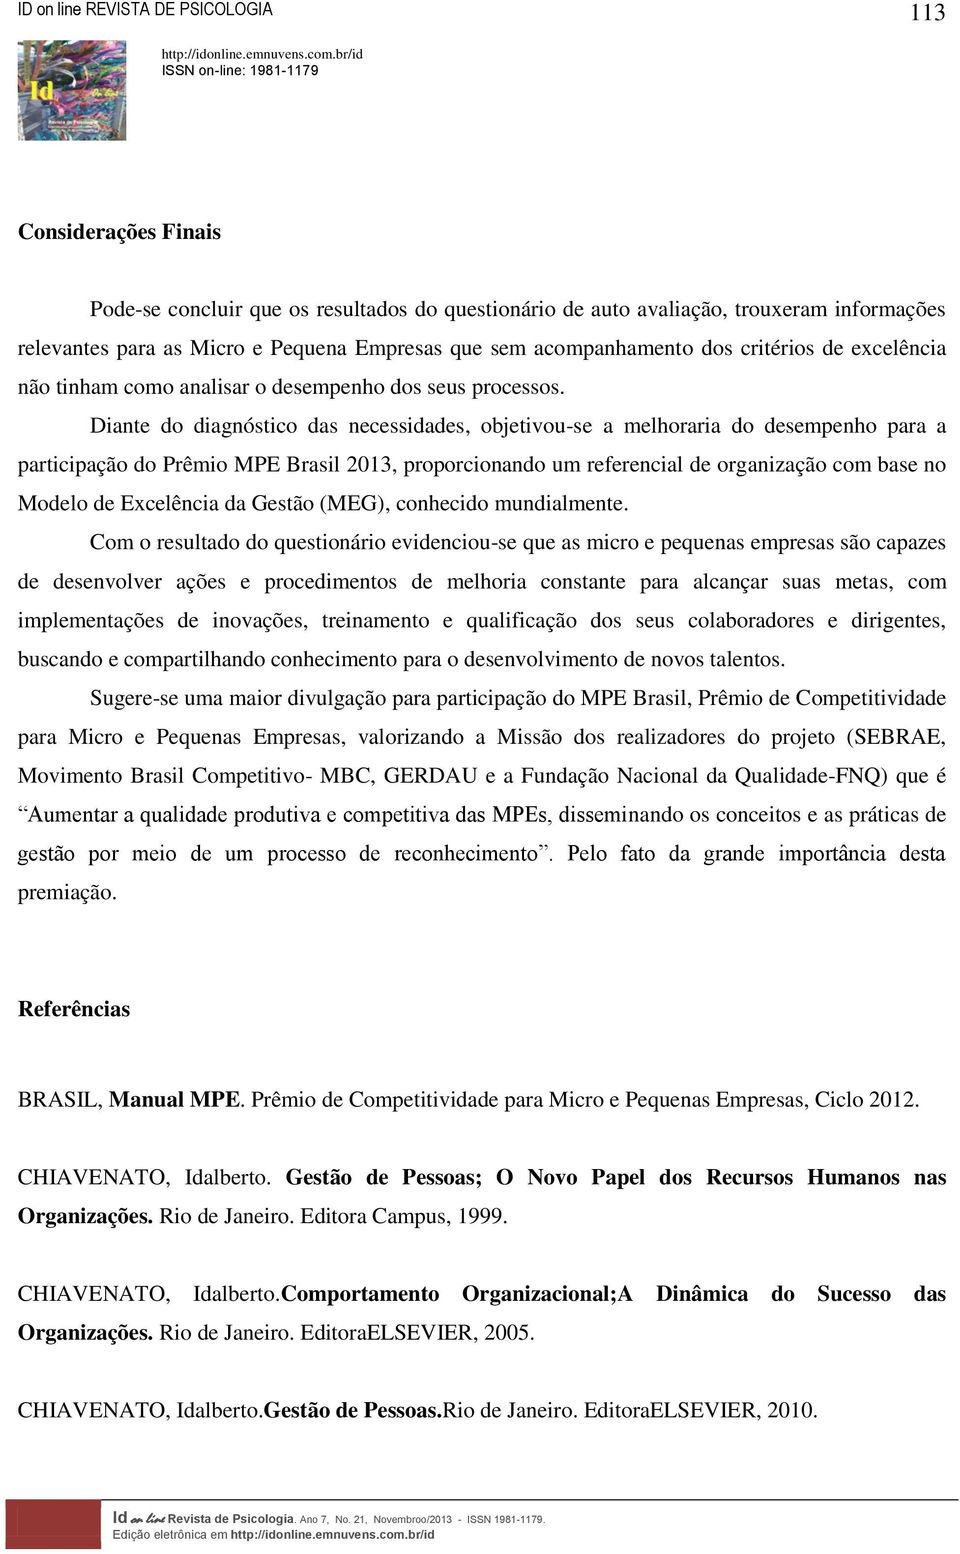 Diante do diagnóstico das necessidades, objetivou-se a melhoraria do desempenho para a participação do Prêmio MPE Brasil 2013, proporcionando um referencial de organização com base no Modelo de